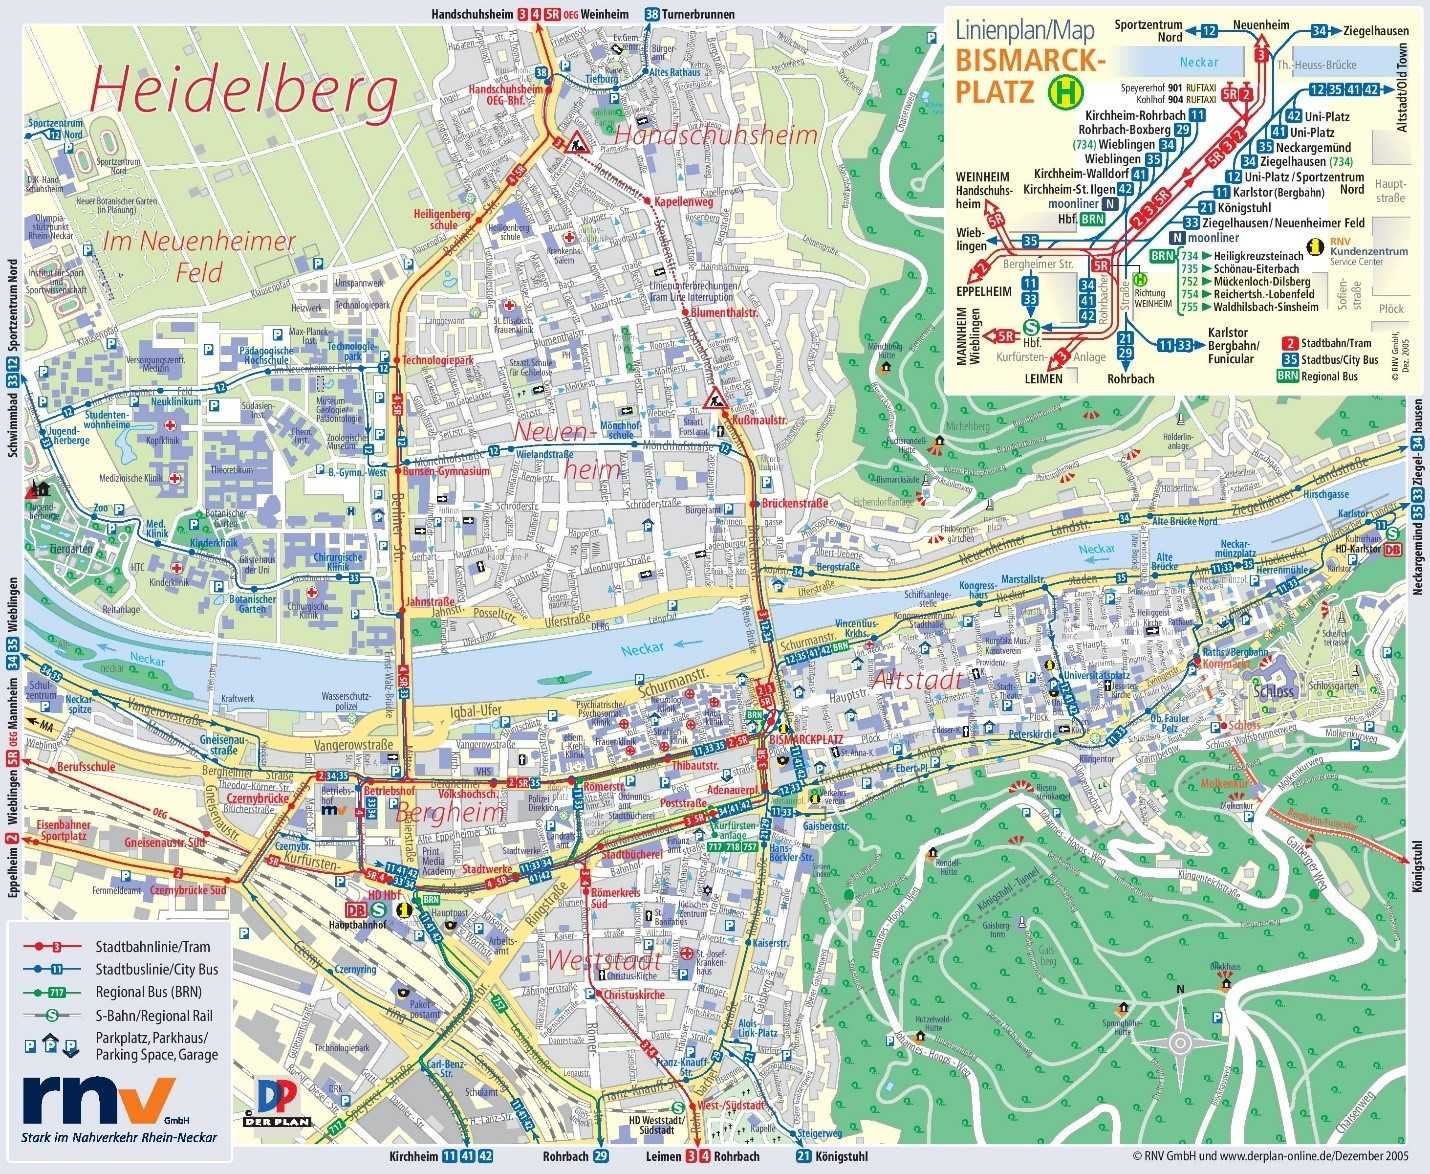 جغرافیا و نقشه شهر هایدلبرگ آلمان